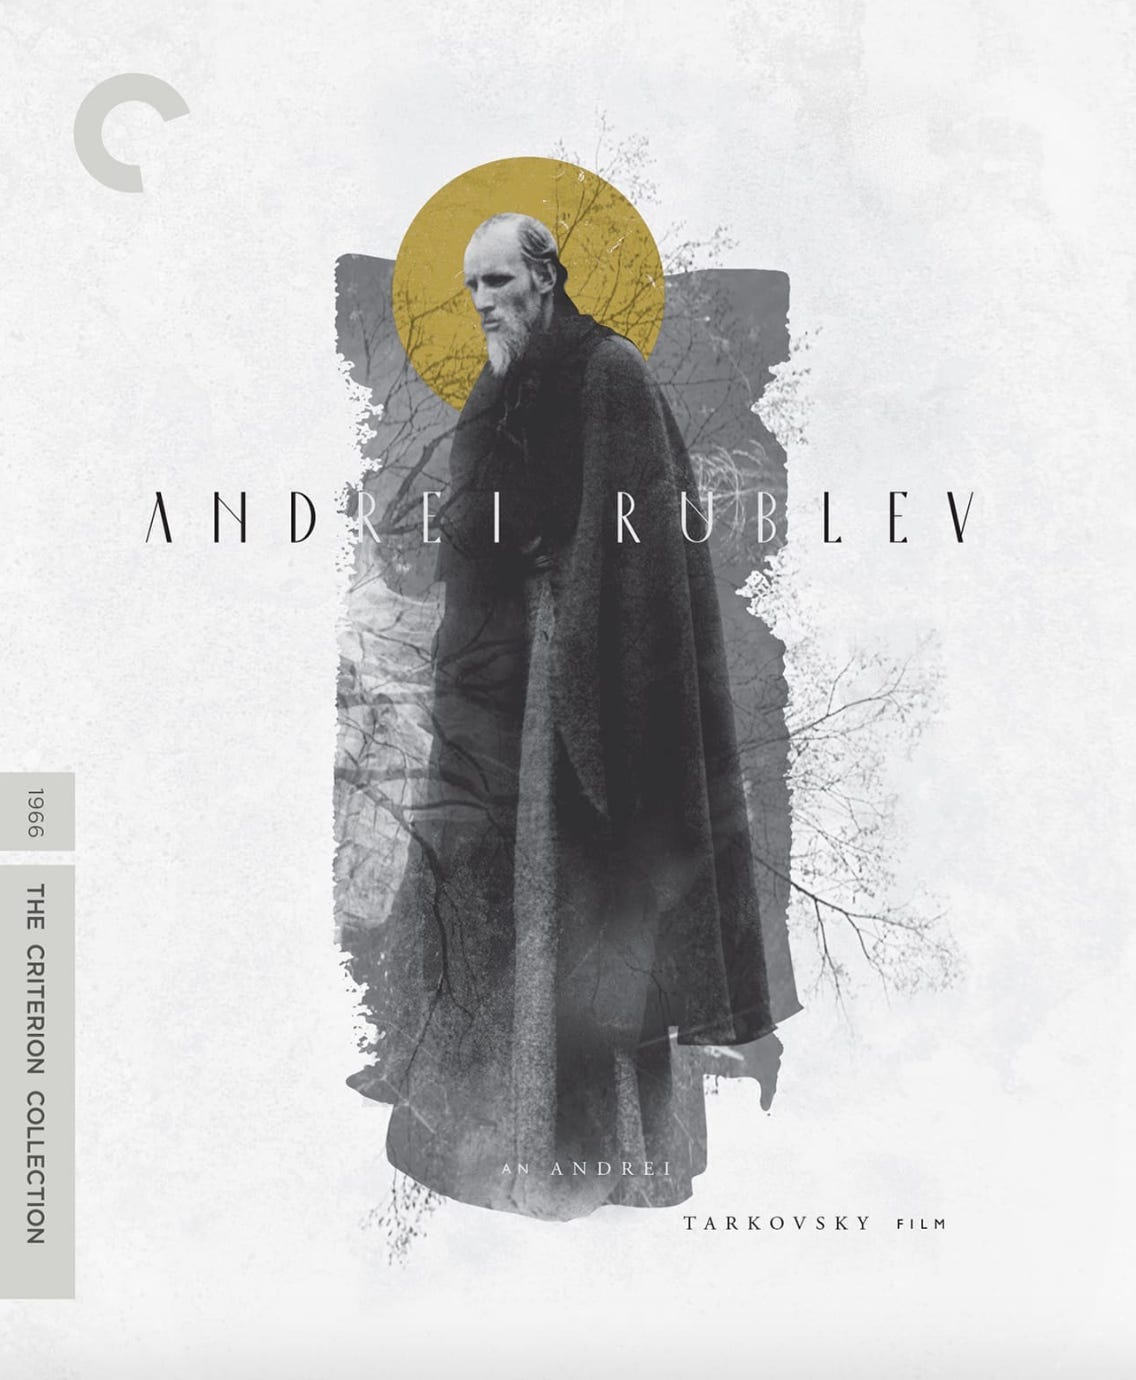 34: Andrei Rublev - by Stephanie Dinkmeyer